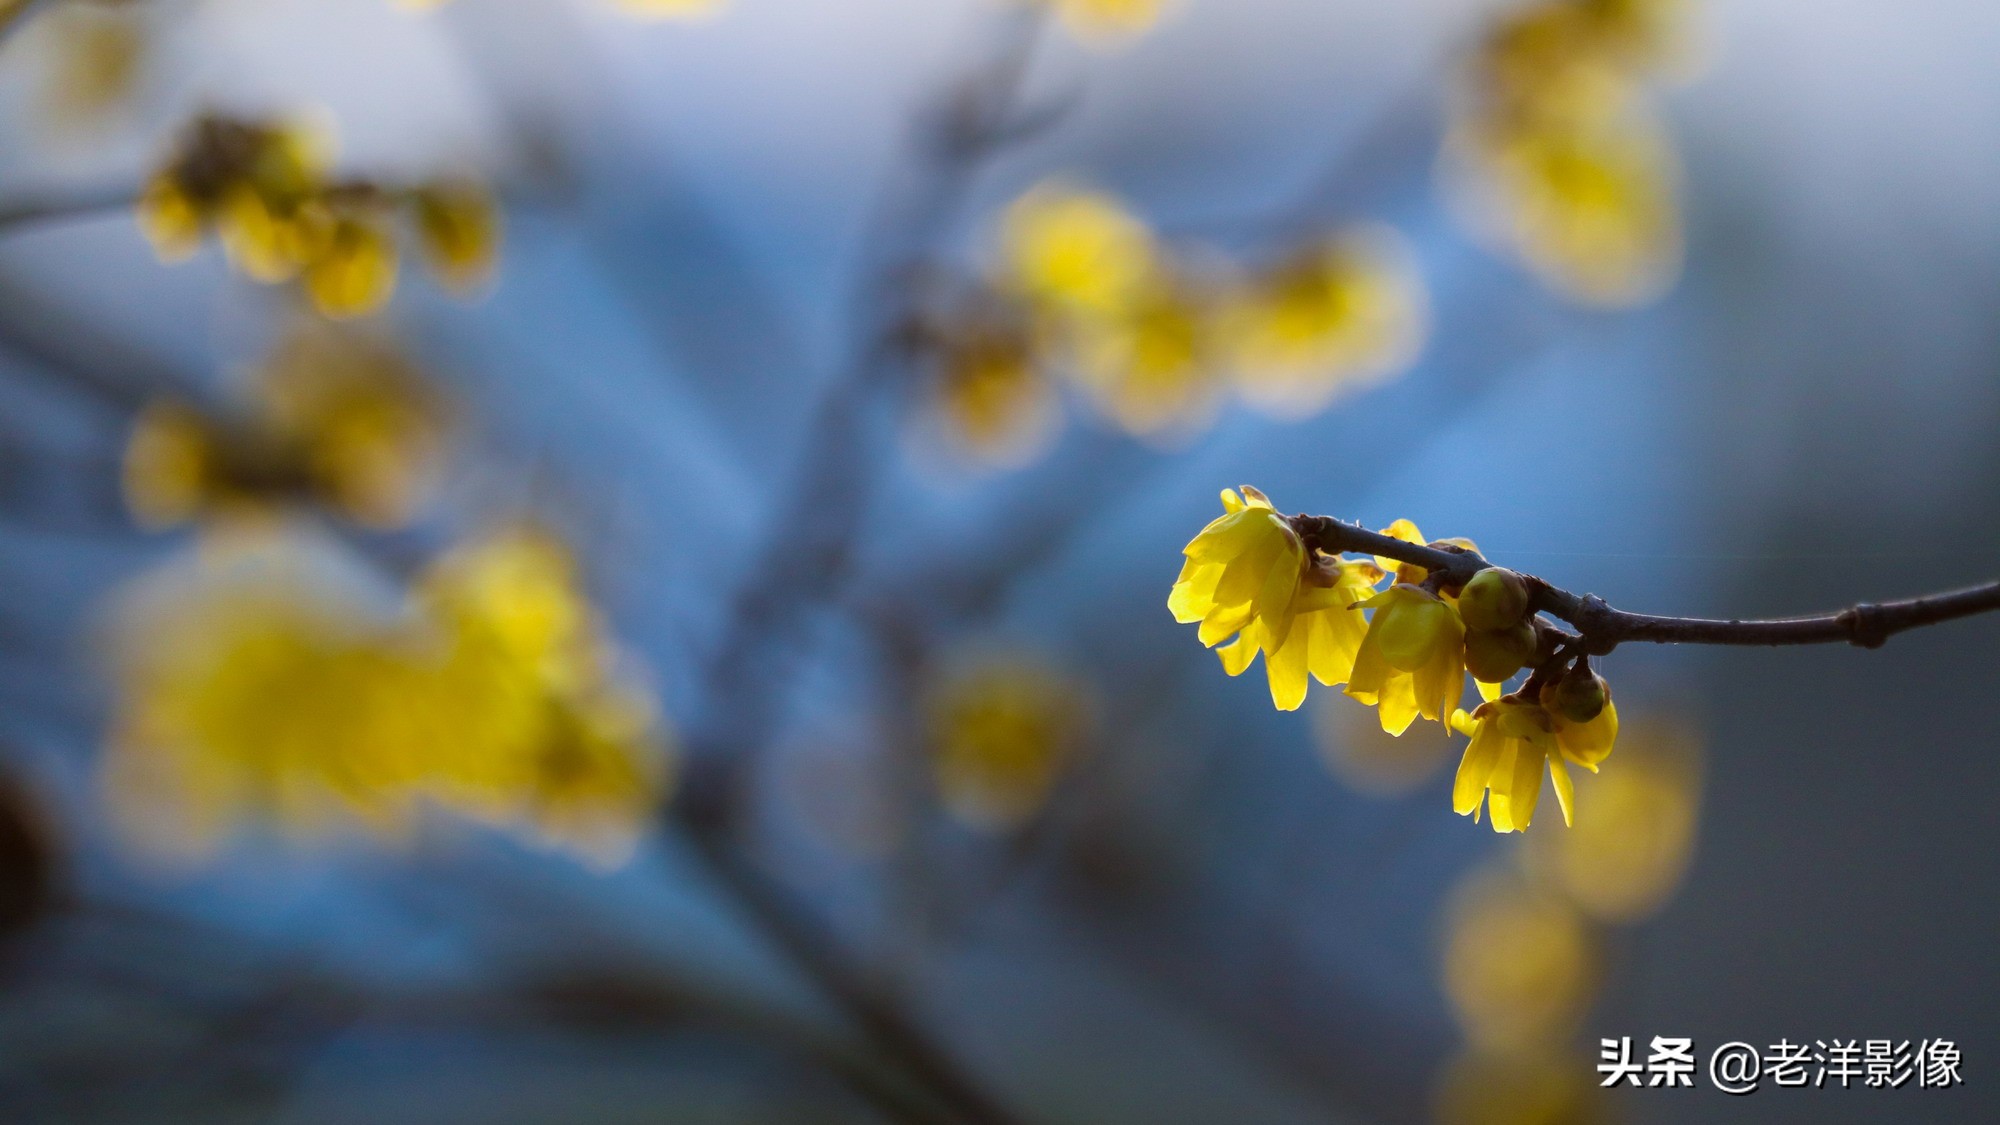 冬天的梅花怎么形容-描写梅花姿态的优美句子